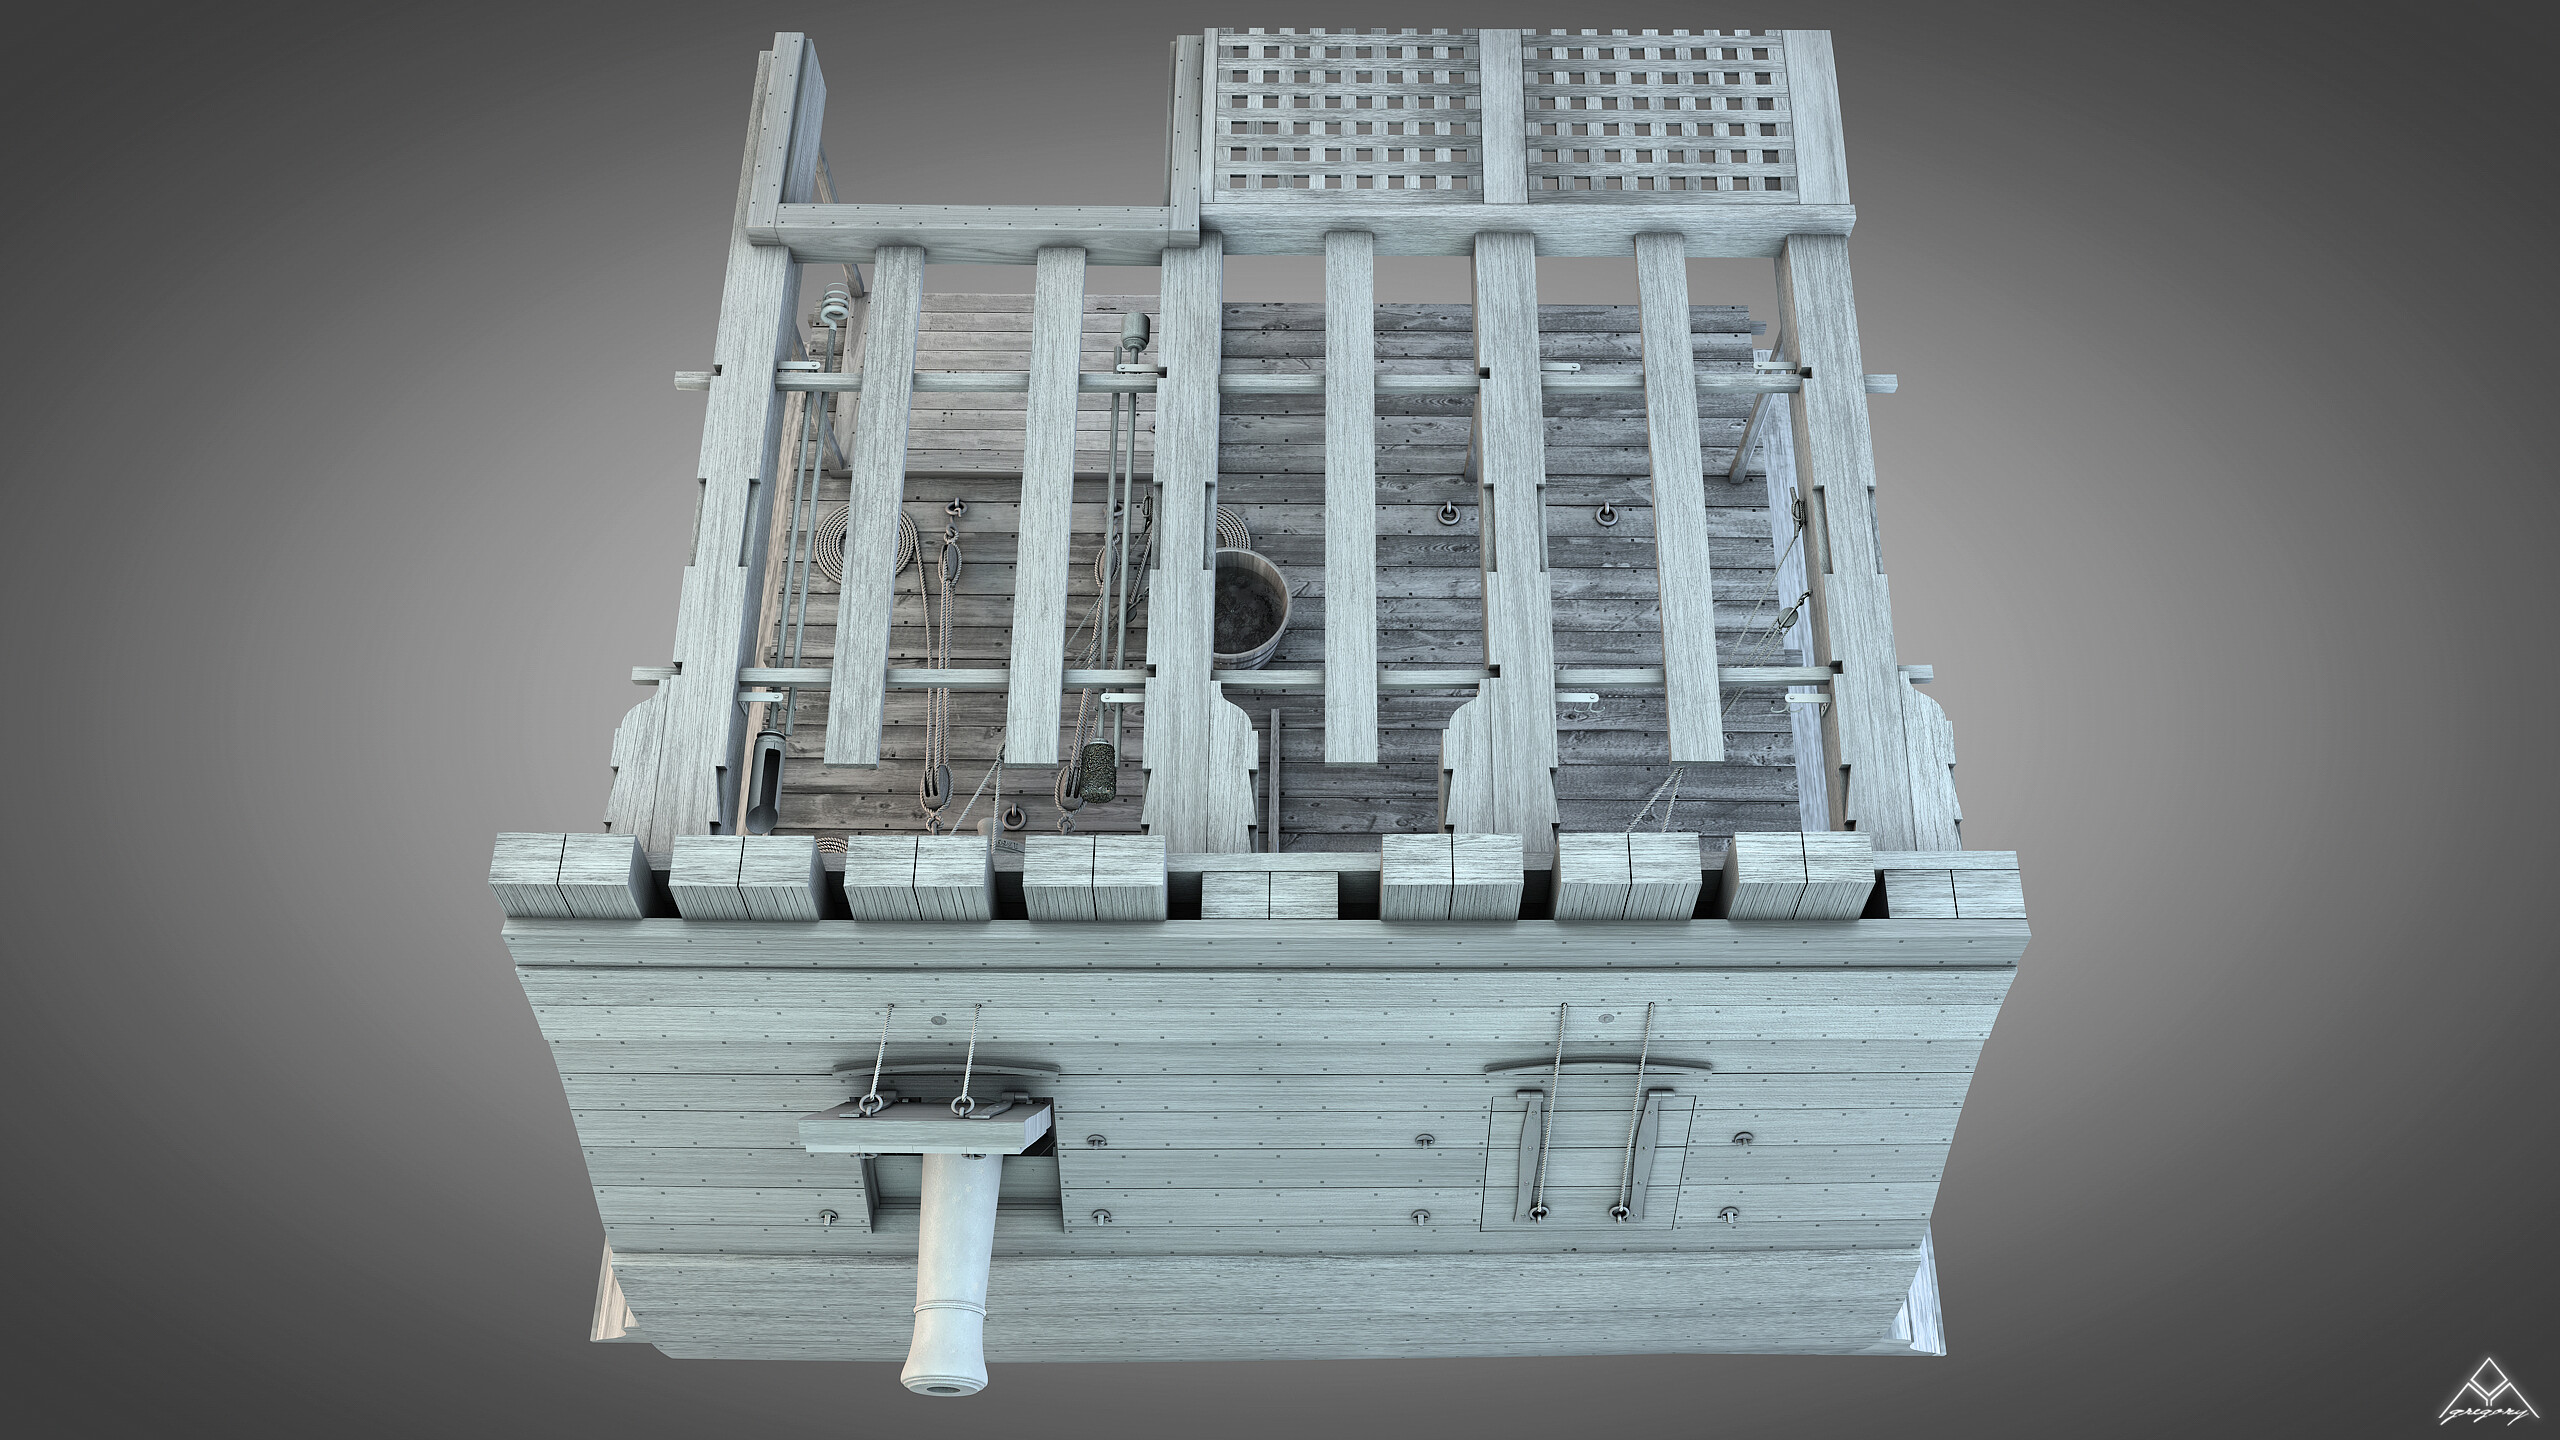 Canons de vaisseau 74 canons création 3D par Greg_3D Gregor38